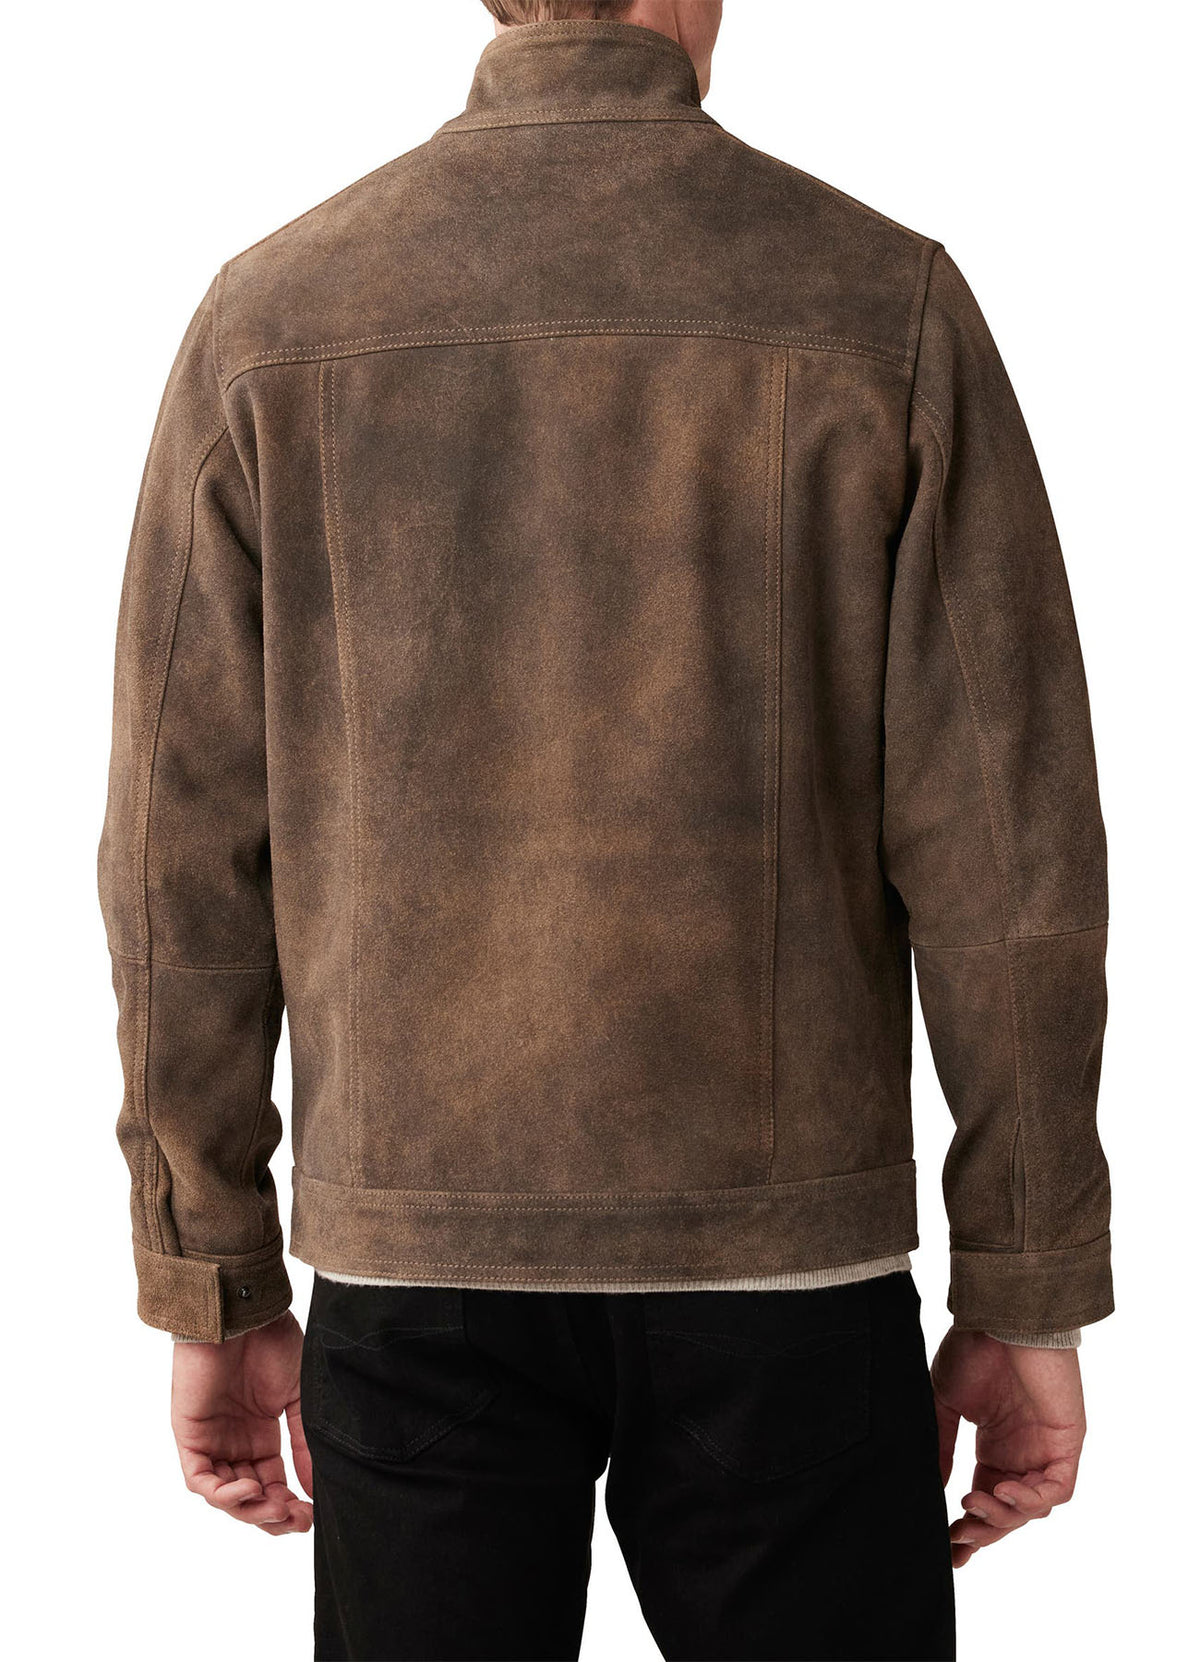 Mens Vintage Camel Color Biker Leather Jacket | Shop Now!